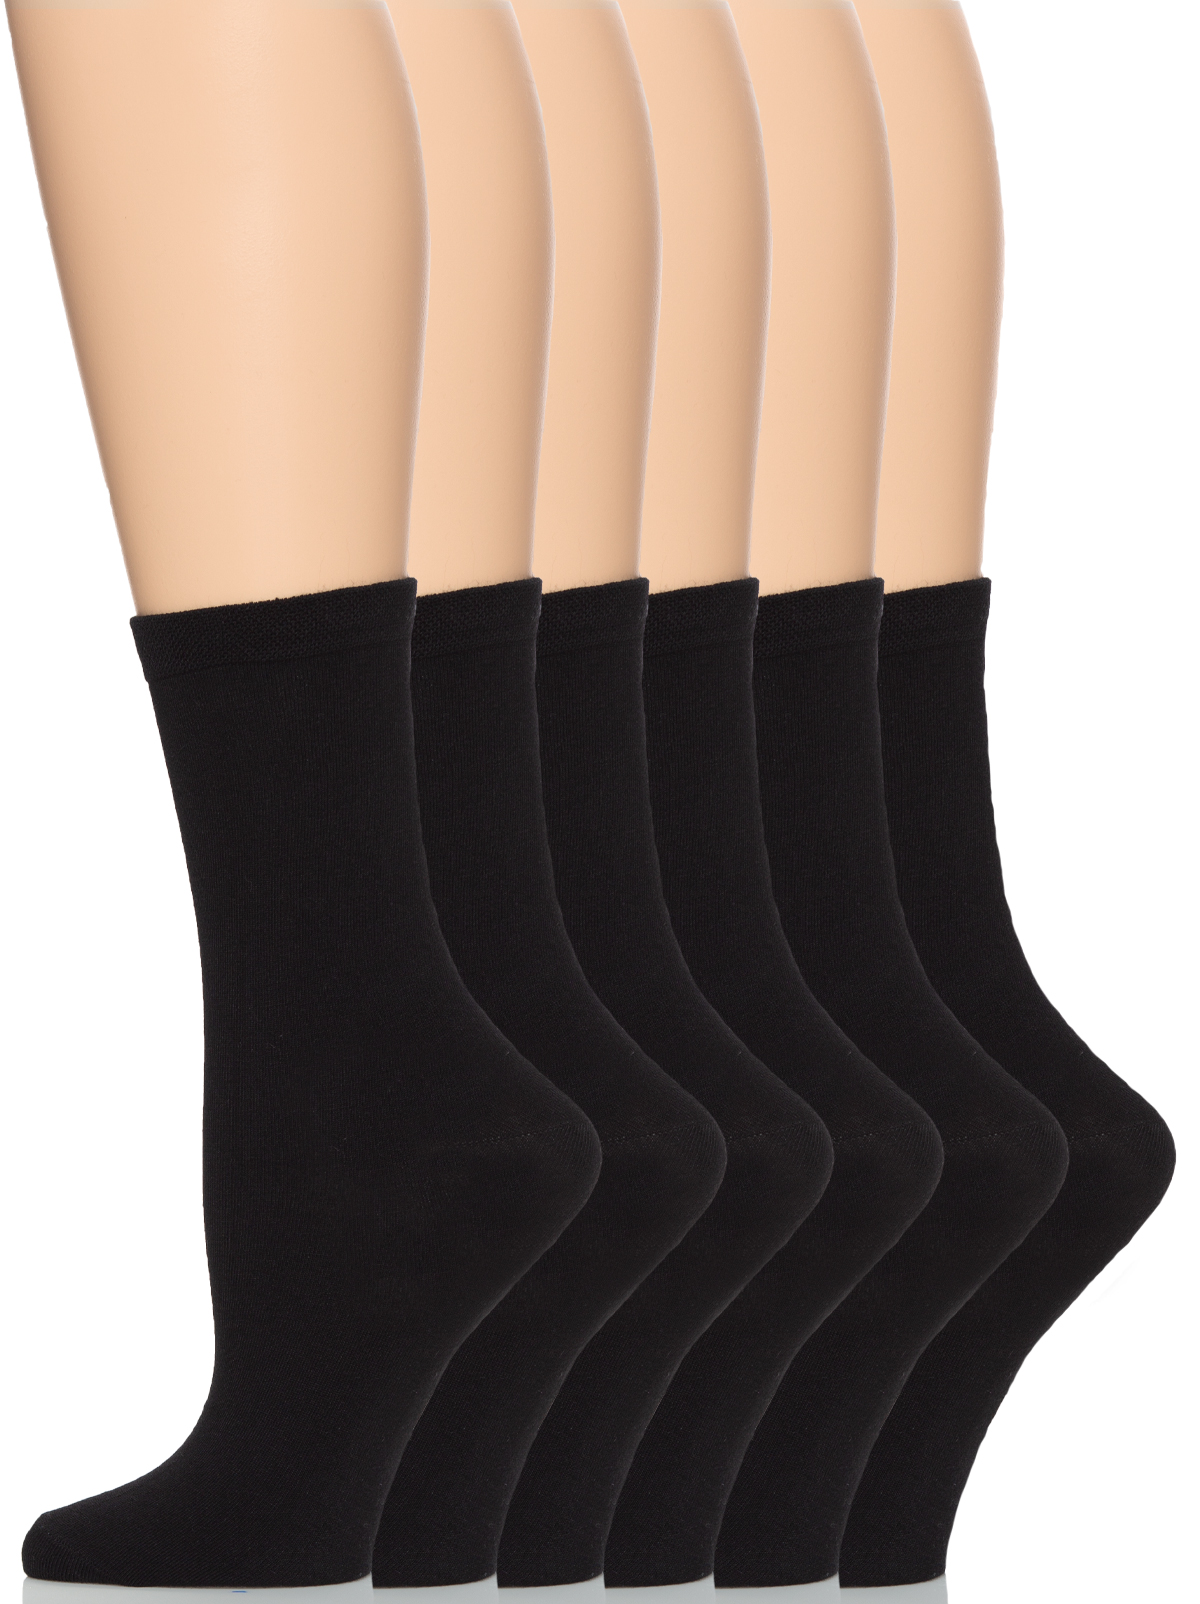 Felina | Women's Bamboo Crew Socks | 6-Pack | eBay